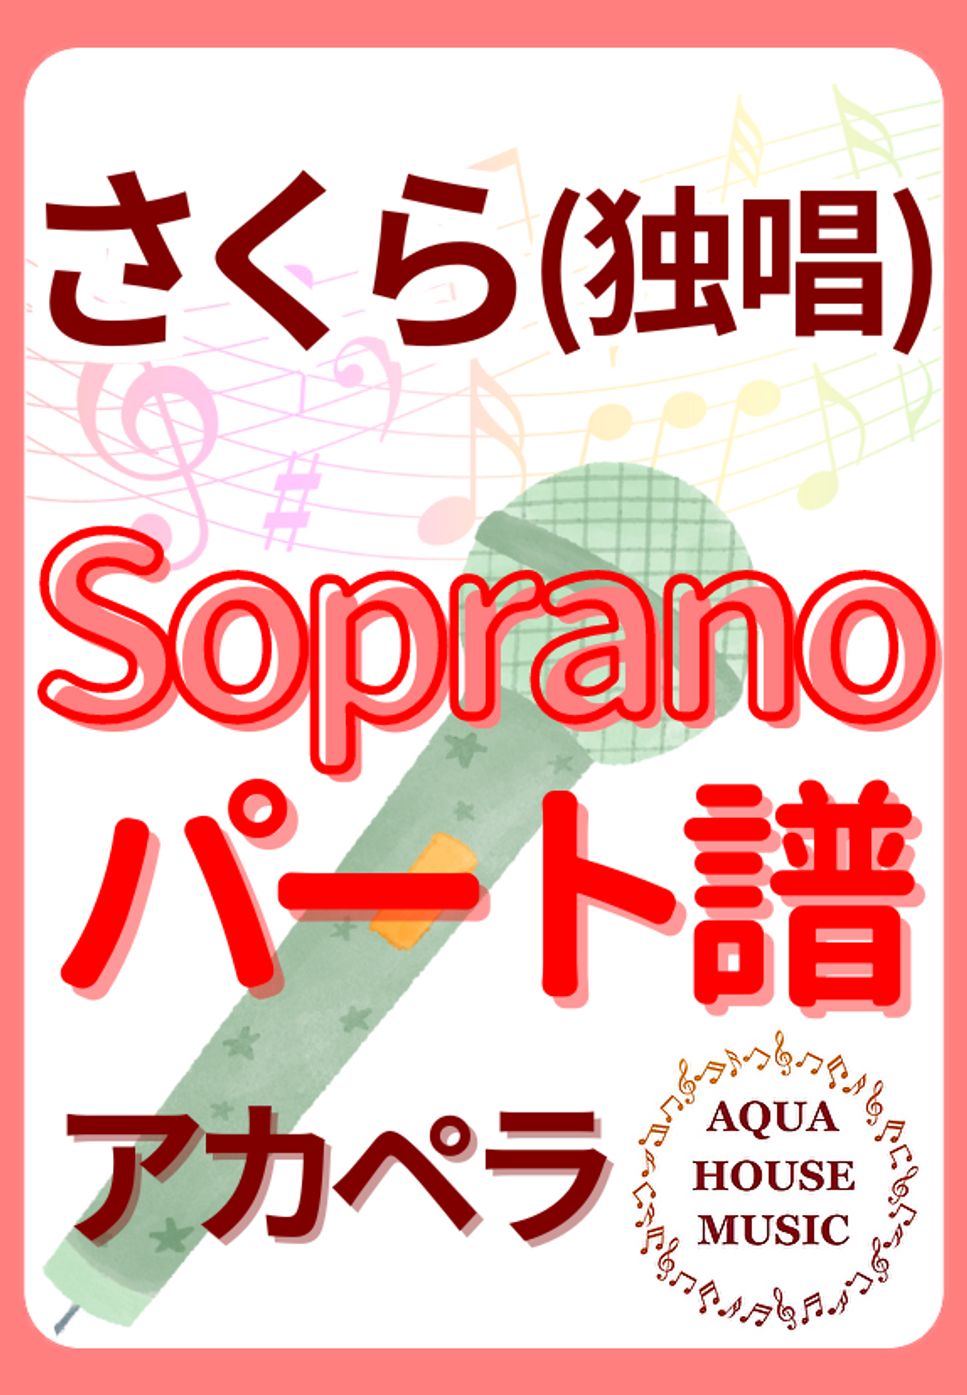 森山 直太朗 - さくら(独唱) (アカペラ楽譜♪Sopranoパート譜) by 飯田 亜紗子